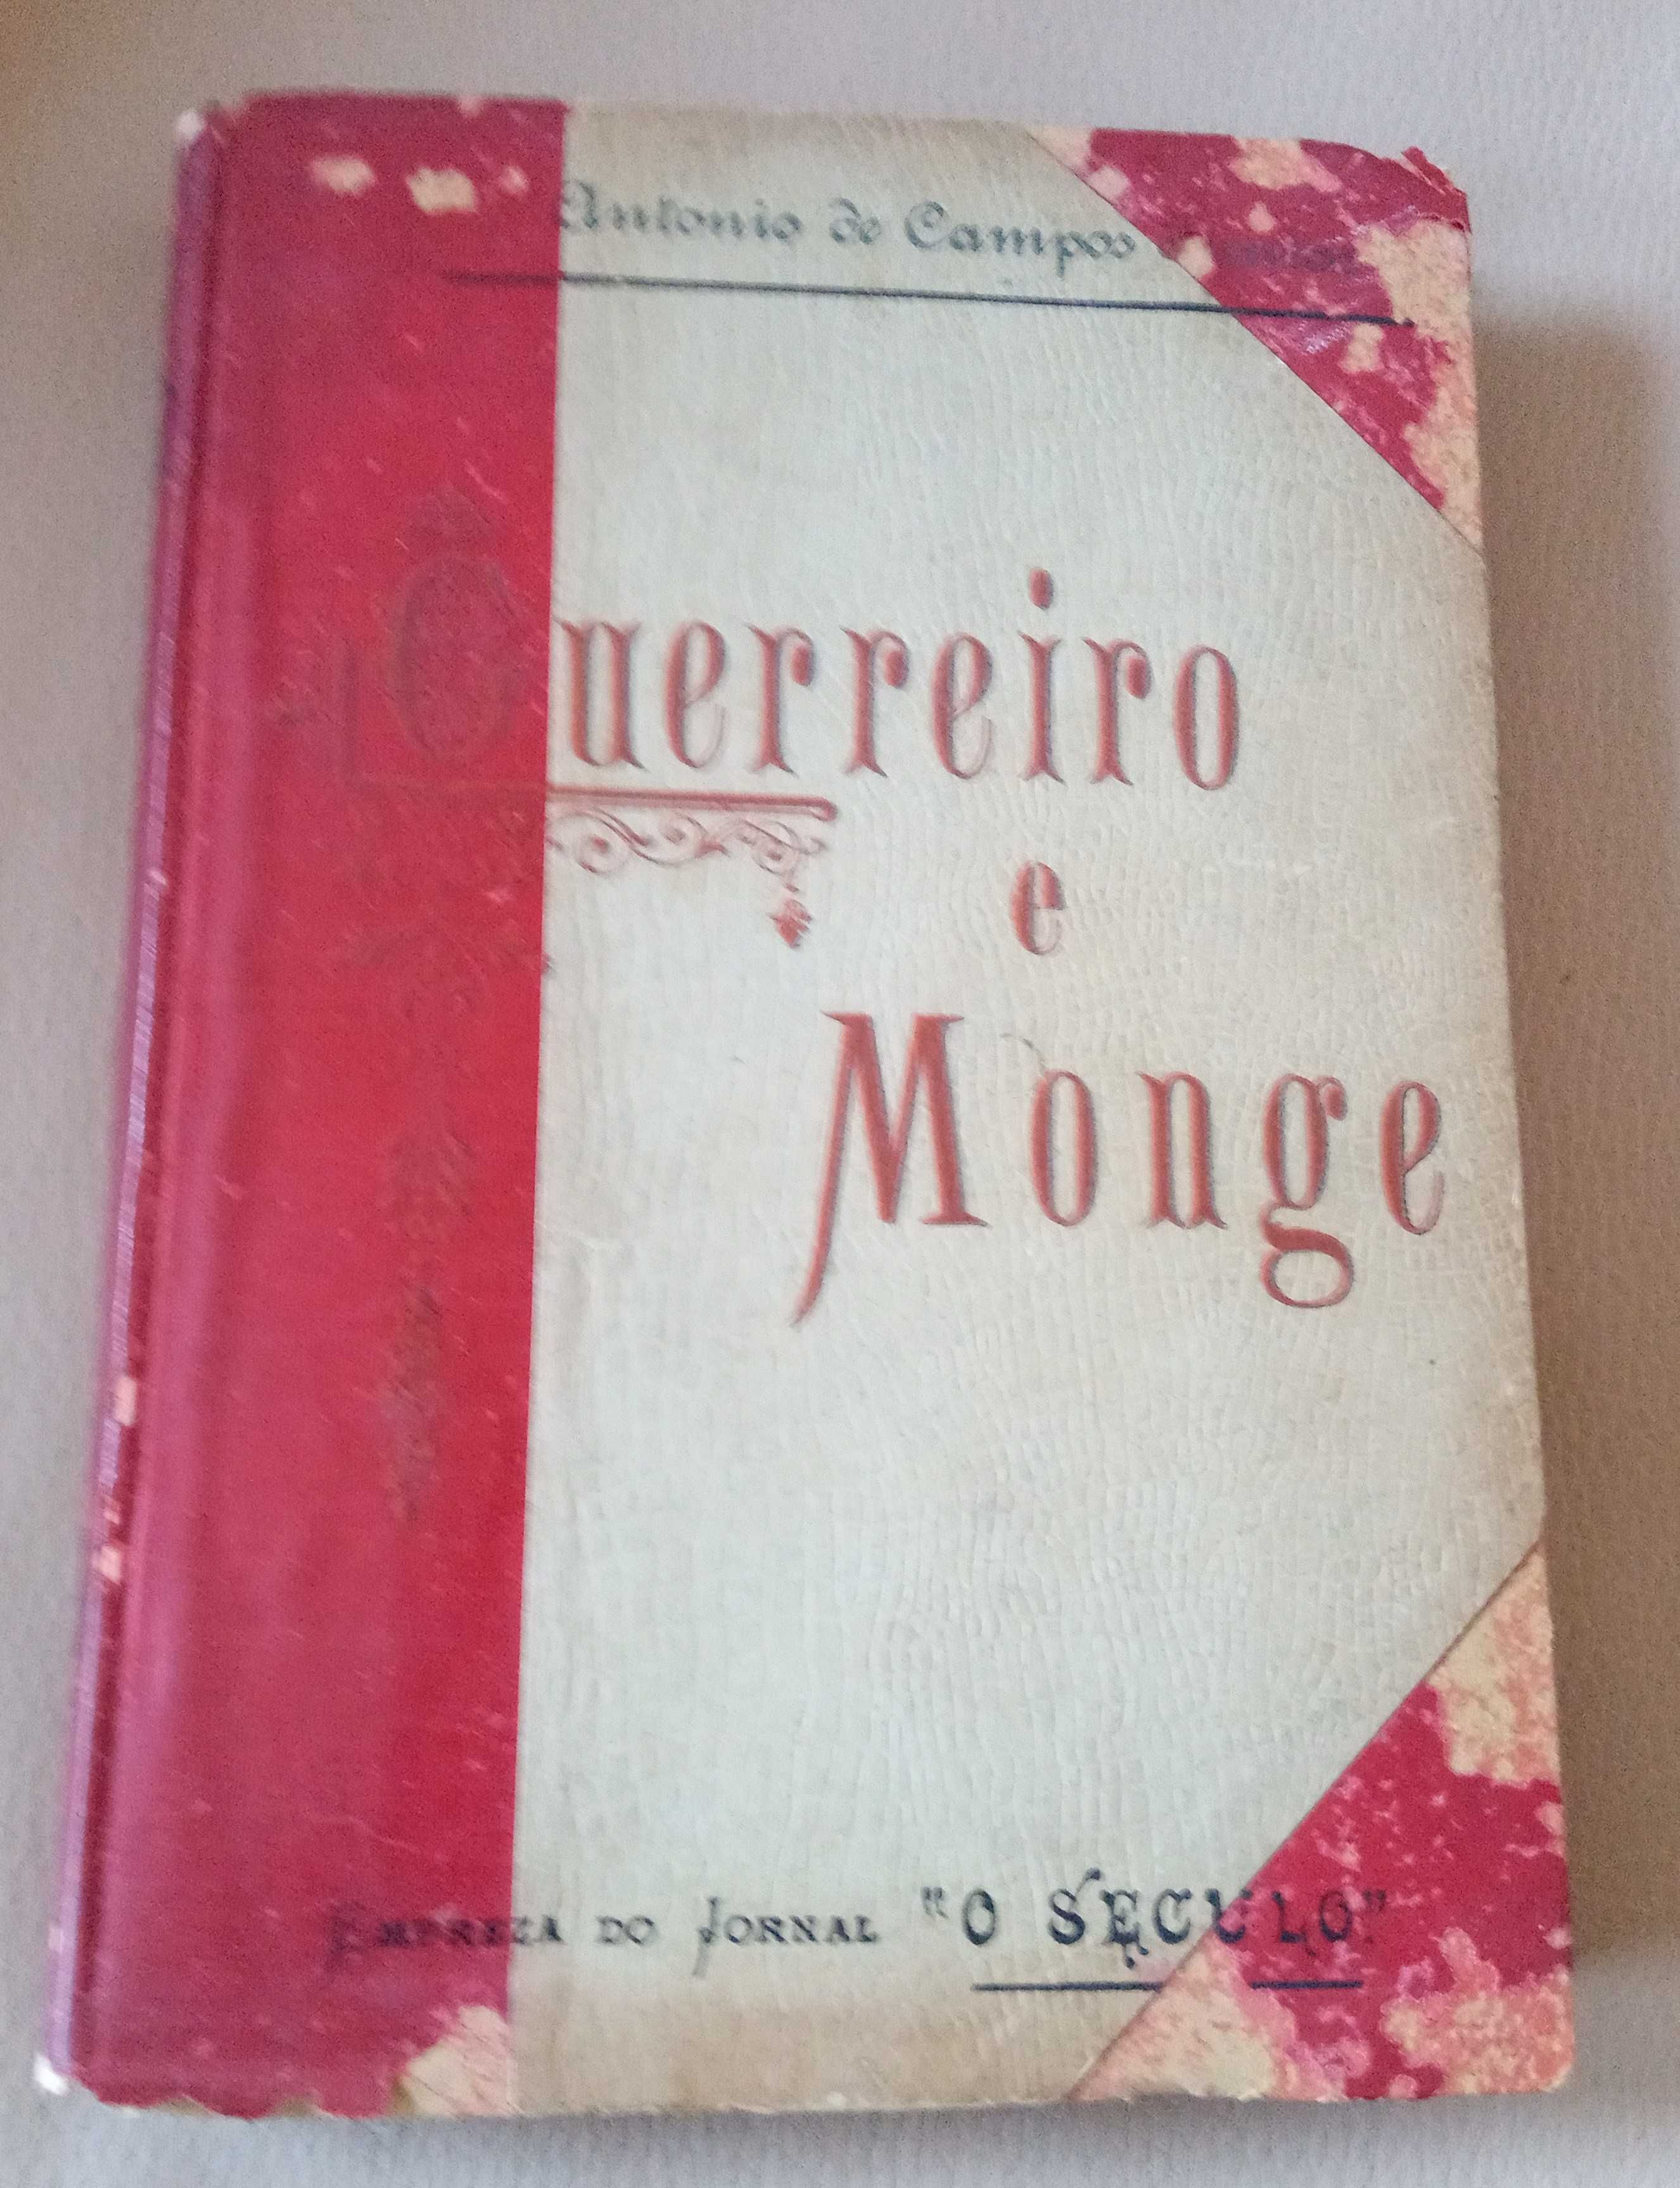 Vendo Livro Classico (António de Campos Junior)